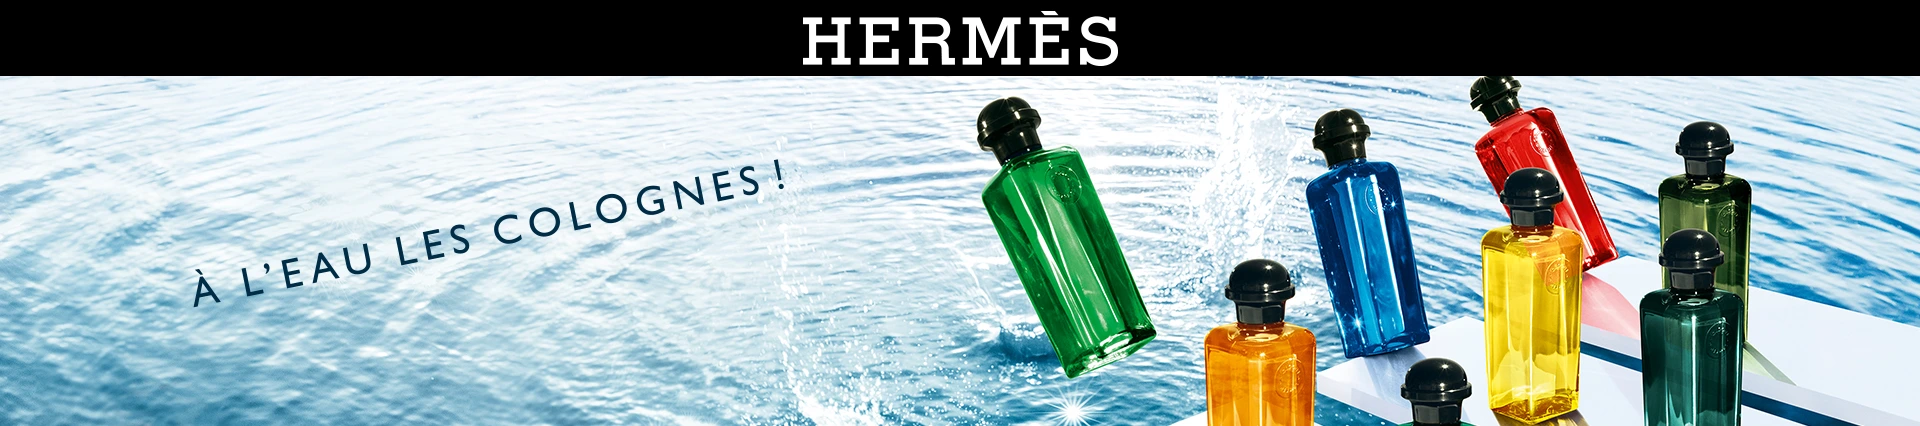 Hermès -Les Colognes